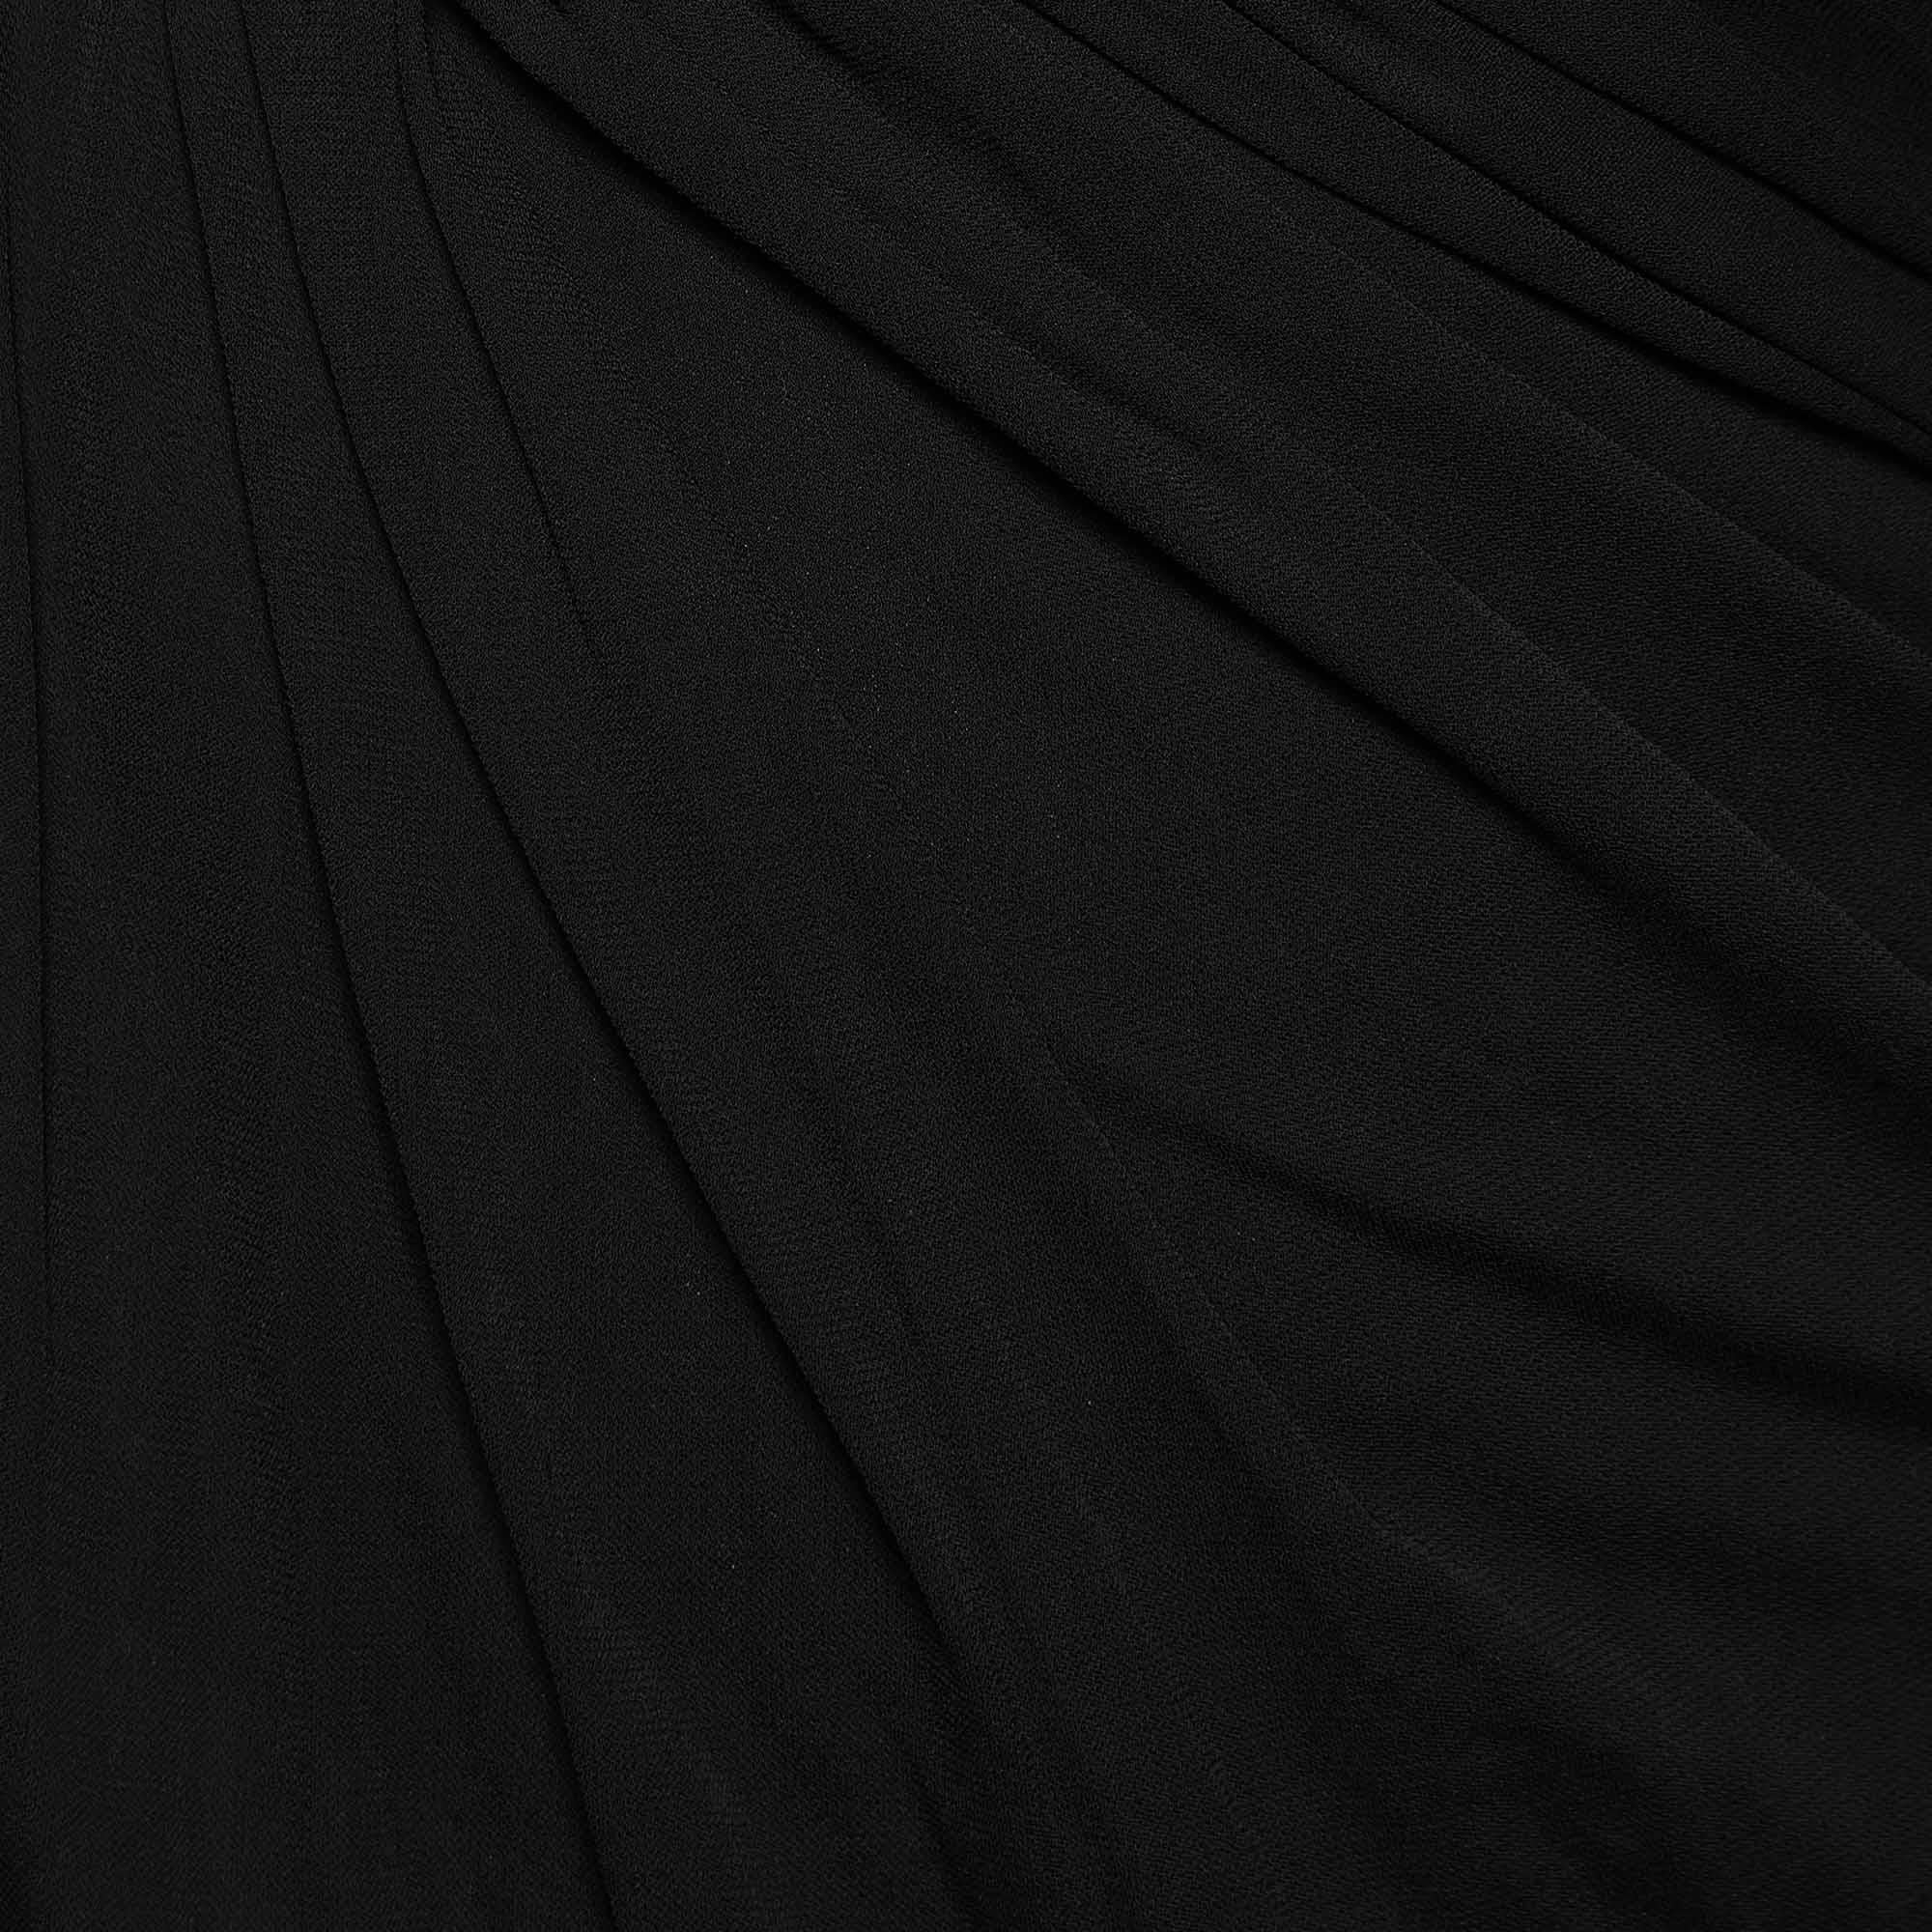 Saint Laurent Black Crepe & Jersey Draped Gown S In Fair Condition For Sale In Dubai, Al Qouz 2